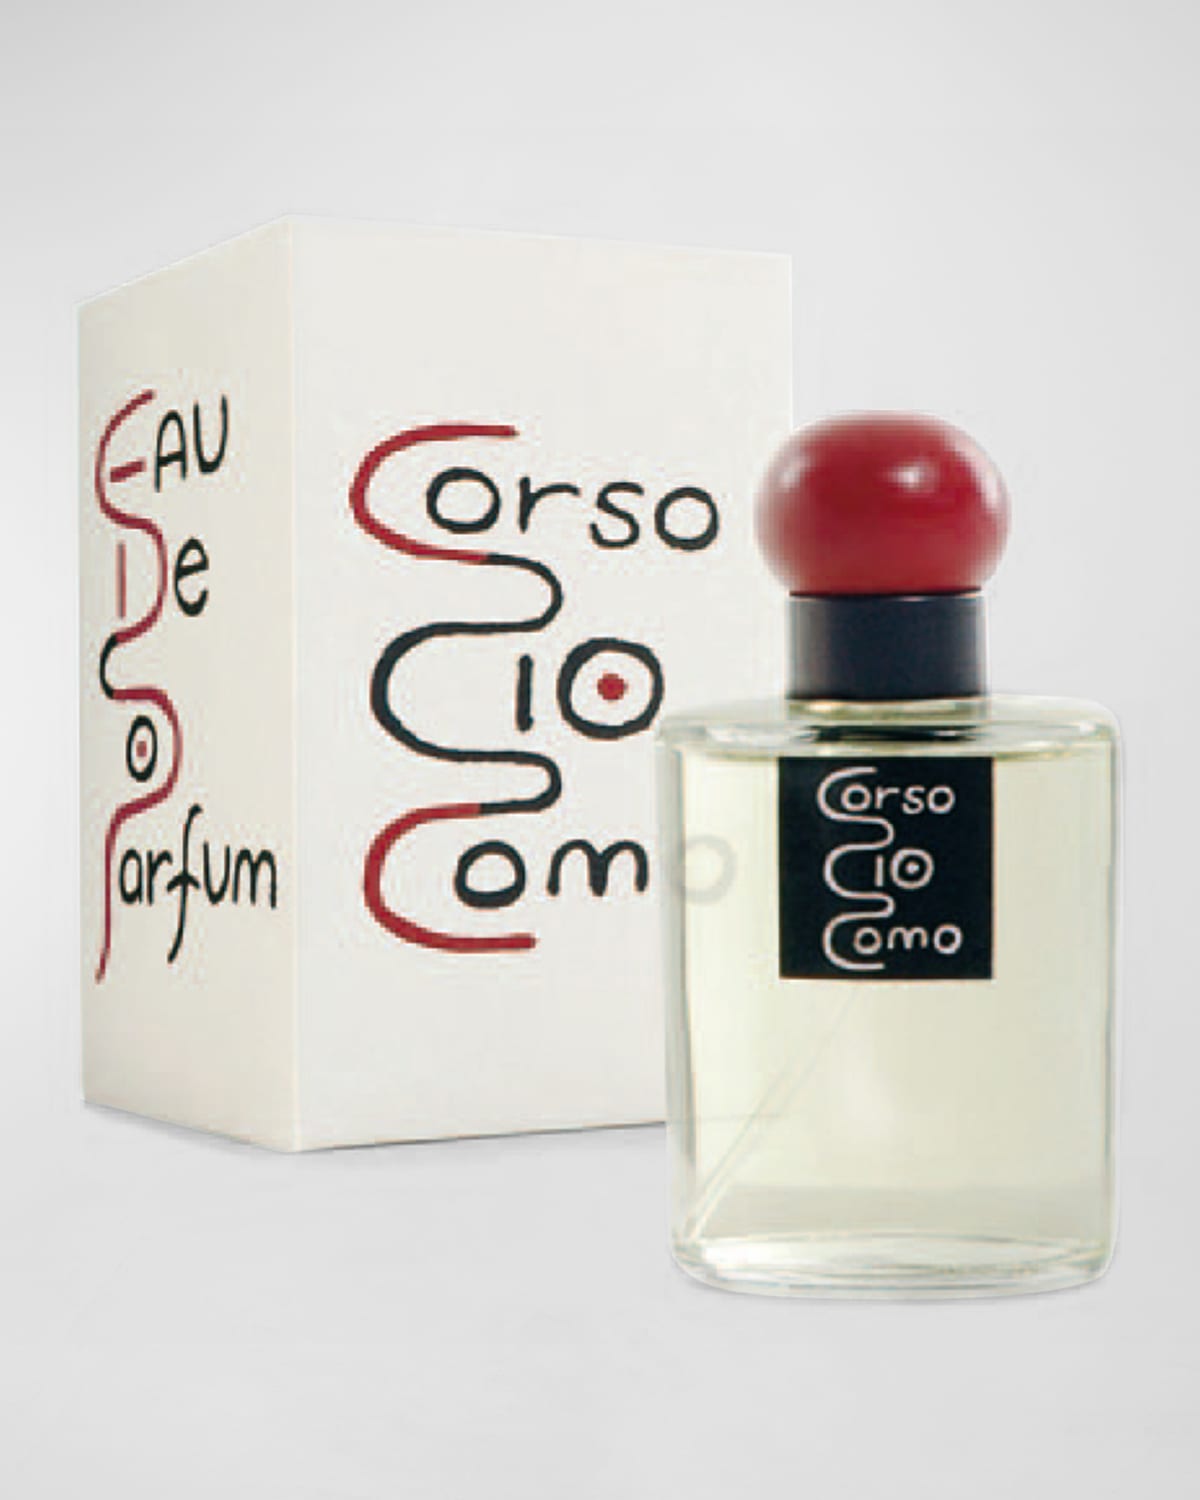 Houbigant Paris Corso Cio Como Eau de Parfum, 3.4 oz.